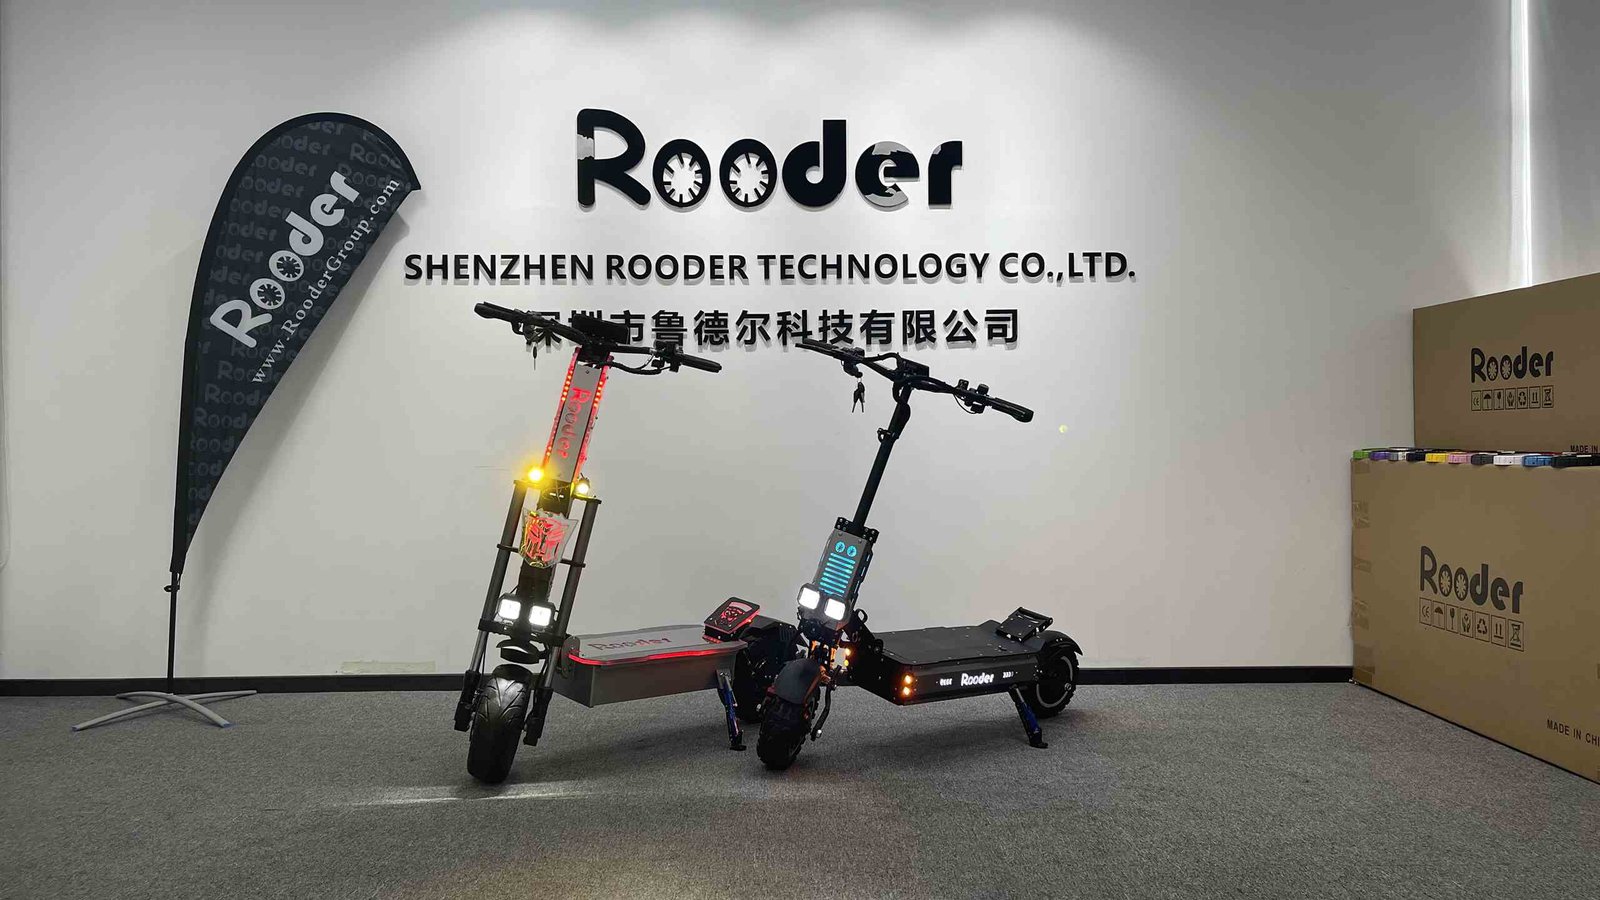 Elektrische scooters